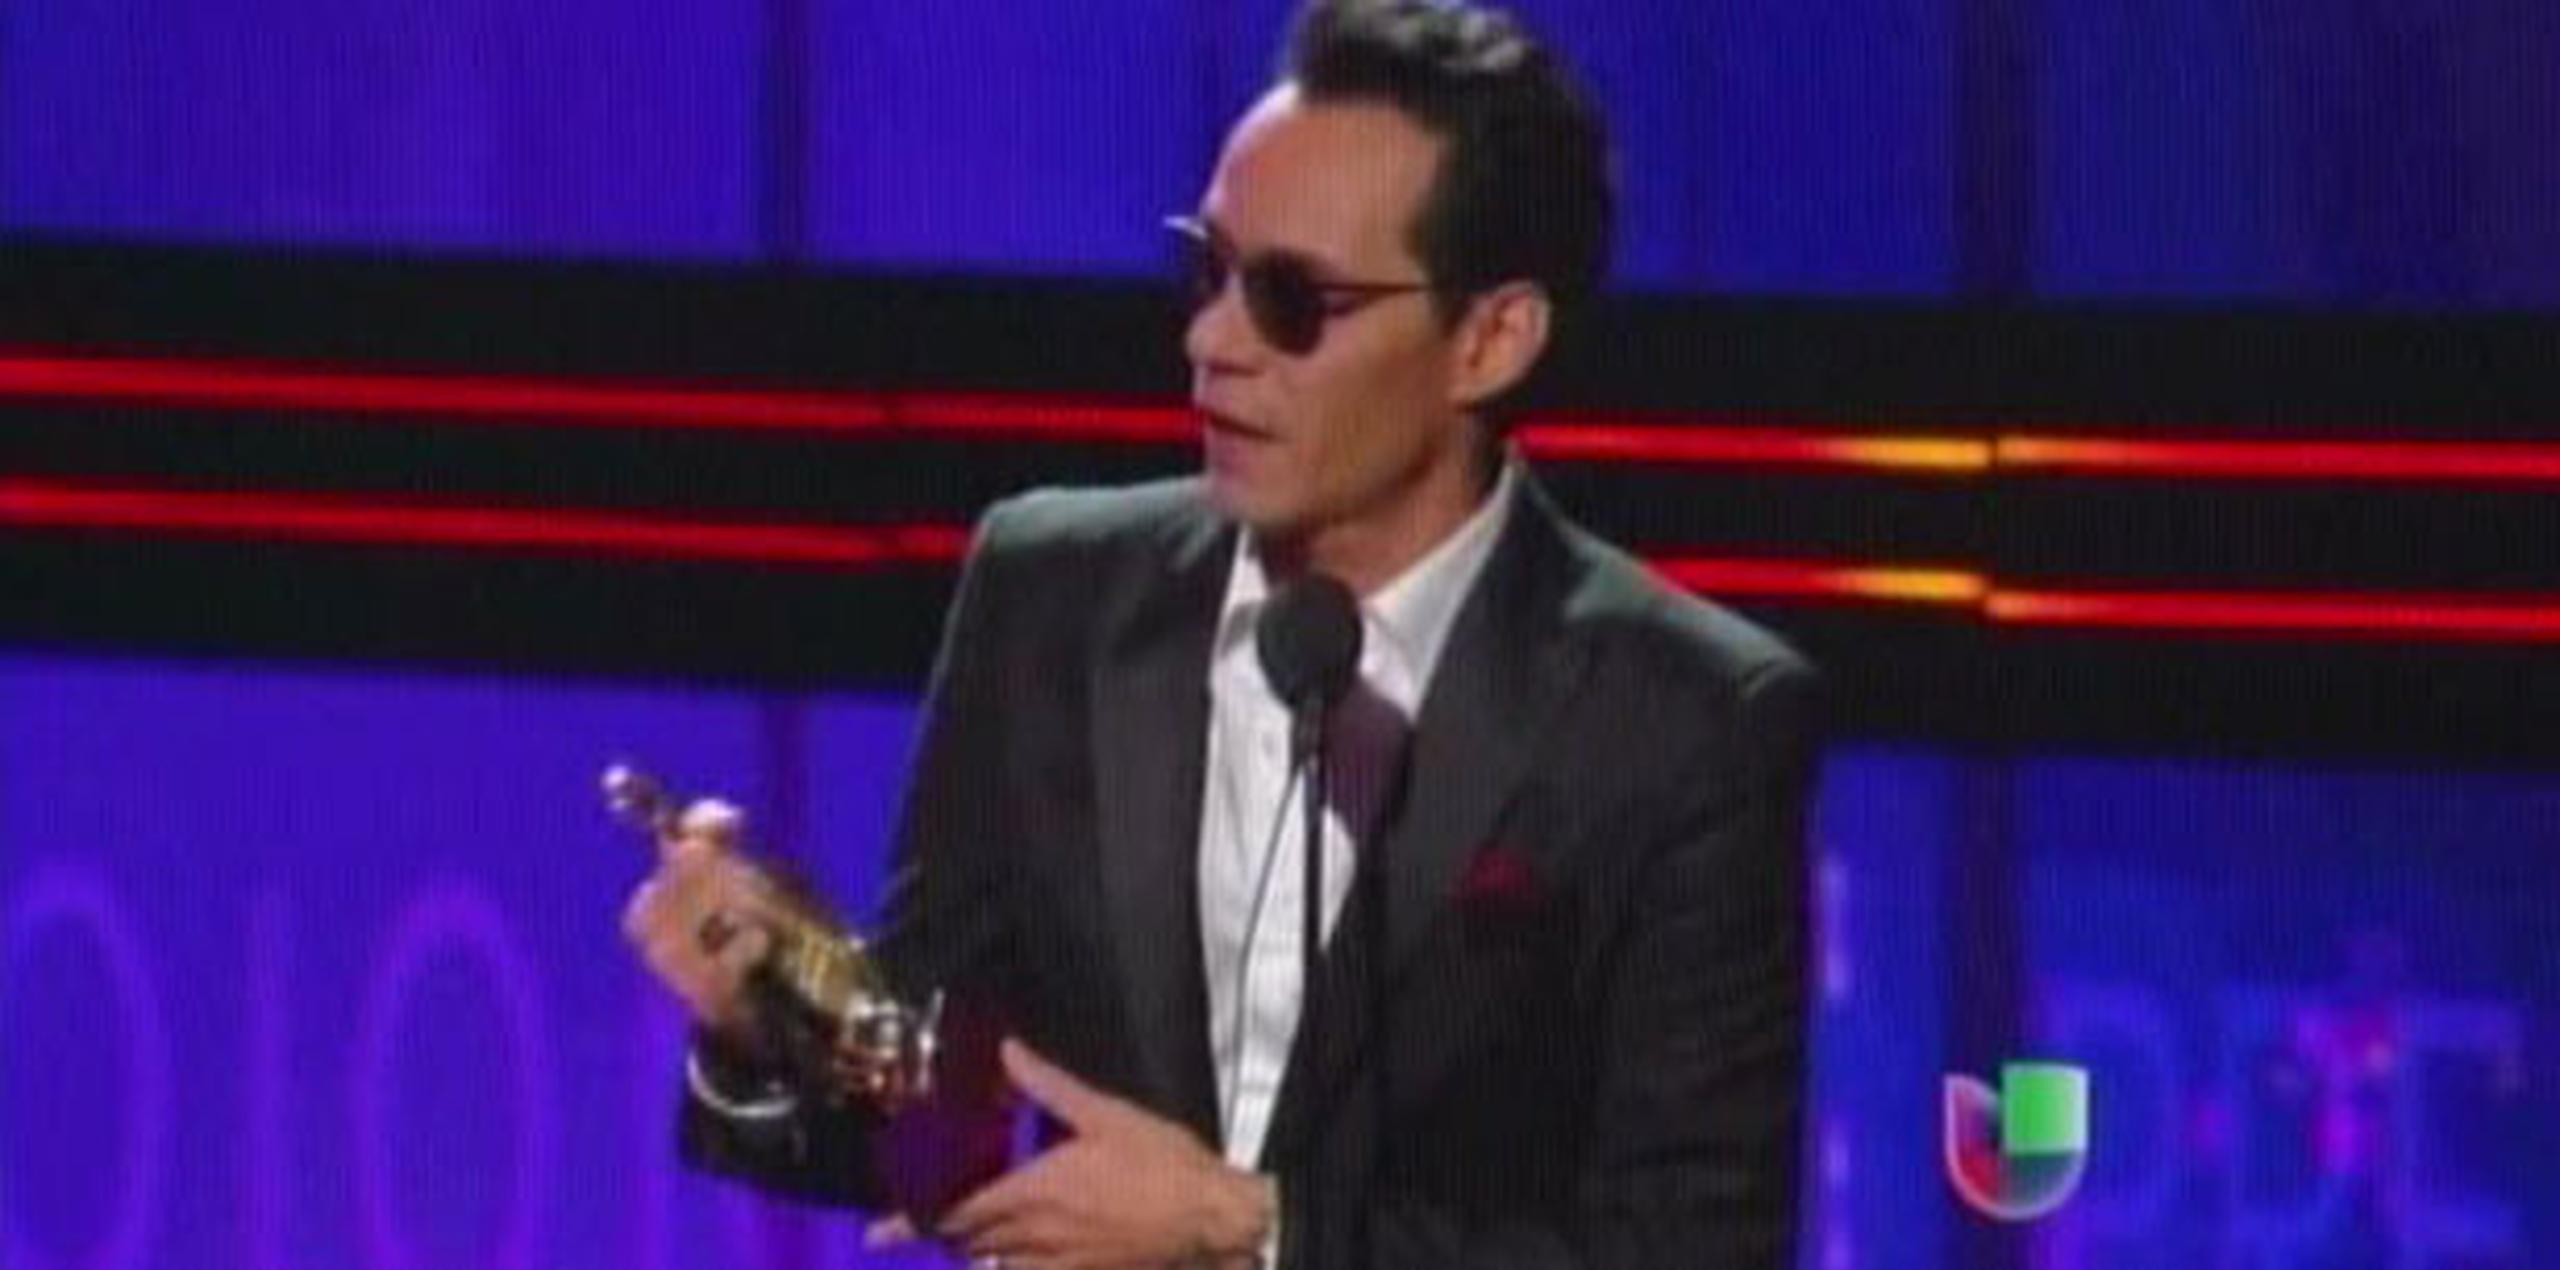 El premio tropical artista del año recayó sobre Marc Anthony. (Captura: Univision)